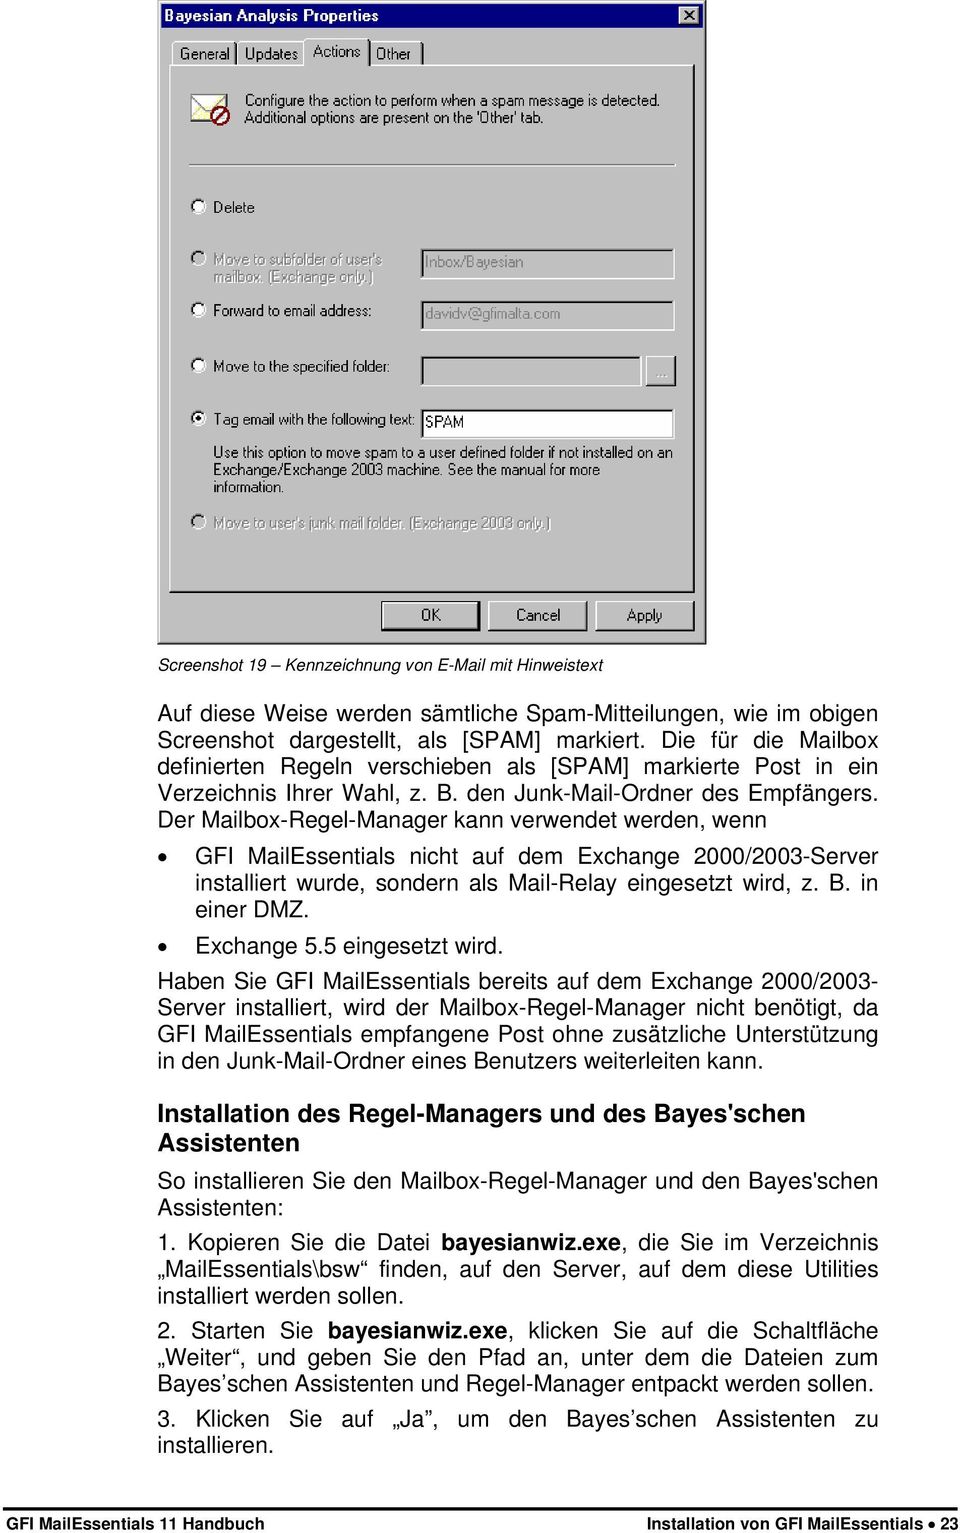 Der Mailbox-Regel-Manager kann verwendet werden, wenn GFI MailEssentials nicht auf dem Exchange 2000/2003-Server installiert wurde, sondern als Mail-Relay eingesetzt wird, z. B. in einer DMZ.